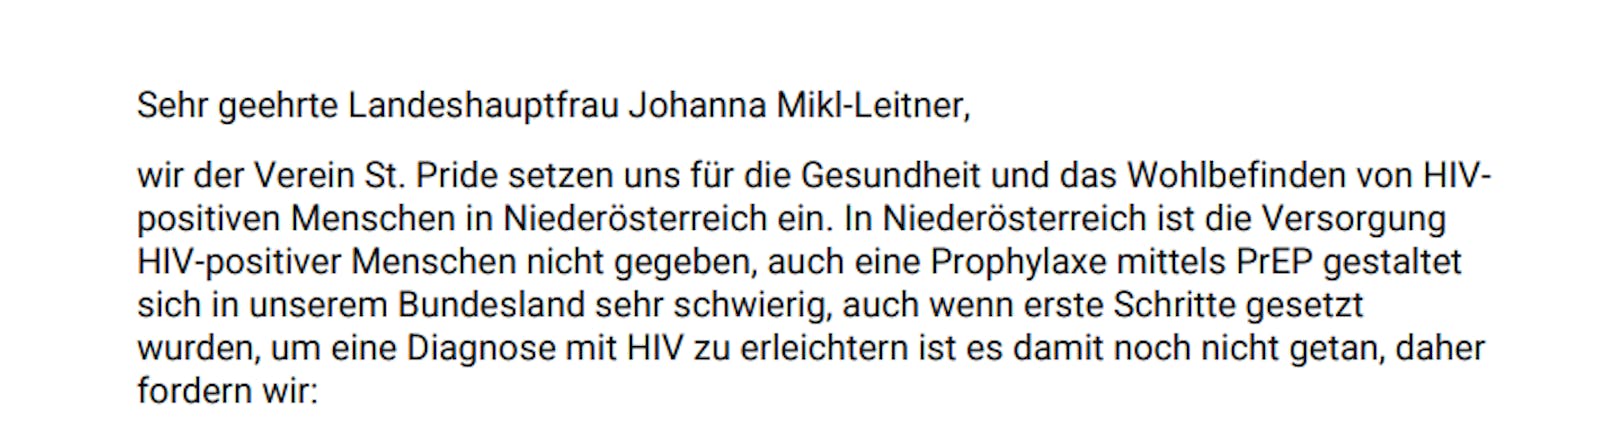 Der Verein St. Pride aus St. Pölten schrieb einen Offenen Brief an Johanna Mikl-Leitner.